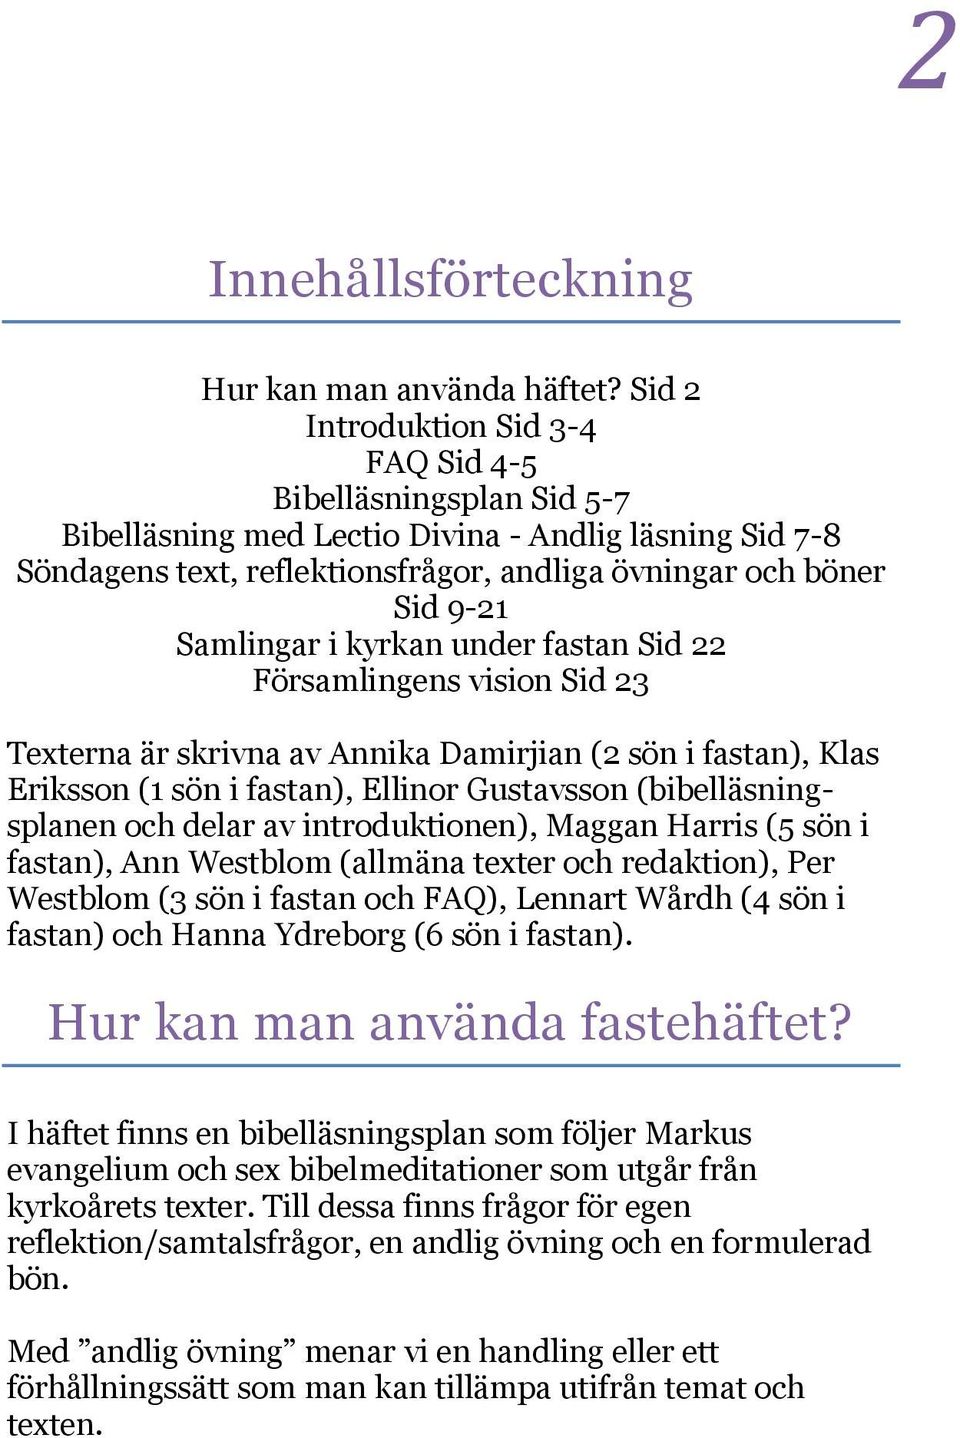 Samlingar i kyrkan under fastan Sid 22 Församlingens vision Sid 23 Texterna är skrivna av Annika Damirjian (2 sön i fastan), Klas Eriksson (1 sön i fastan), Ellinor Gustavsson (bibelläsningsplanen